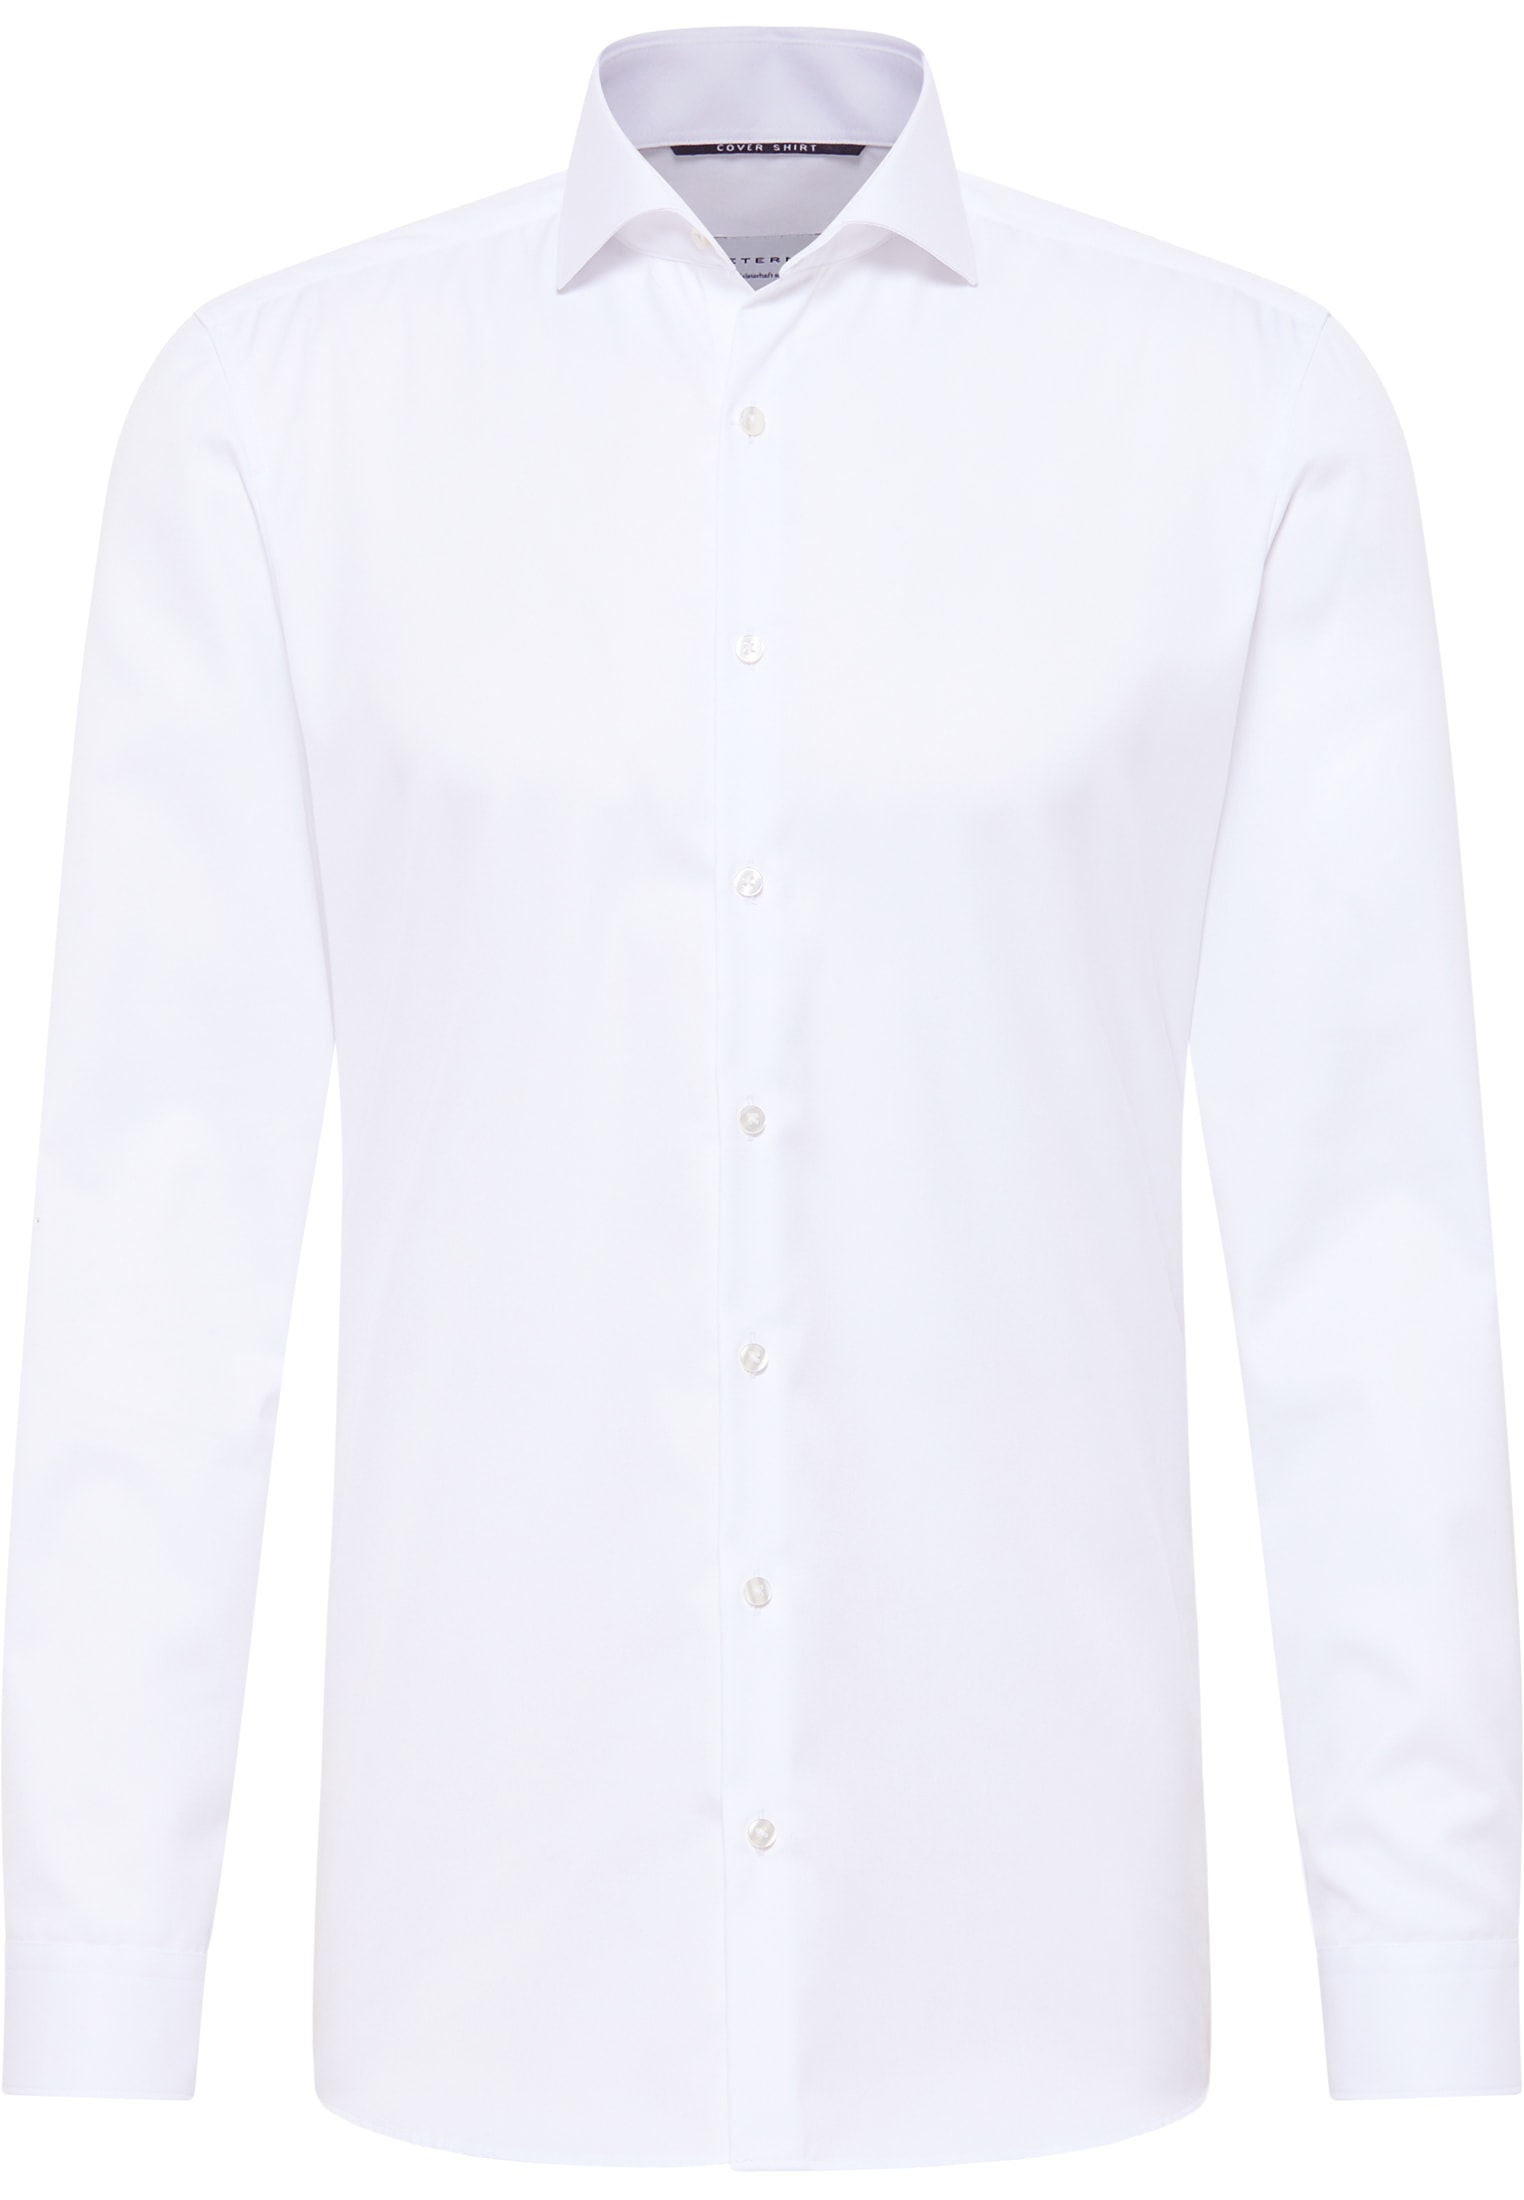 SUPER SLIM Cover Shirt blanc uni